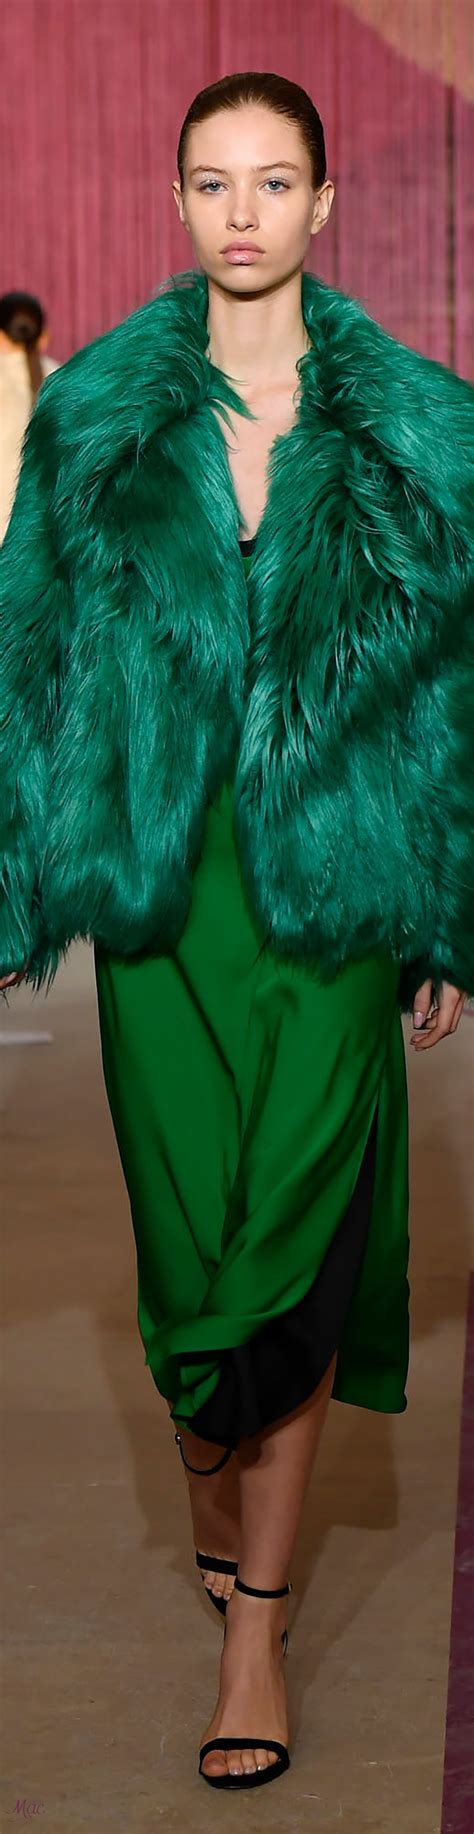 Fall 2018 Rtw Milly Shades Of Green Blue Green Fashion 2018 Fashion